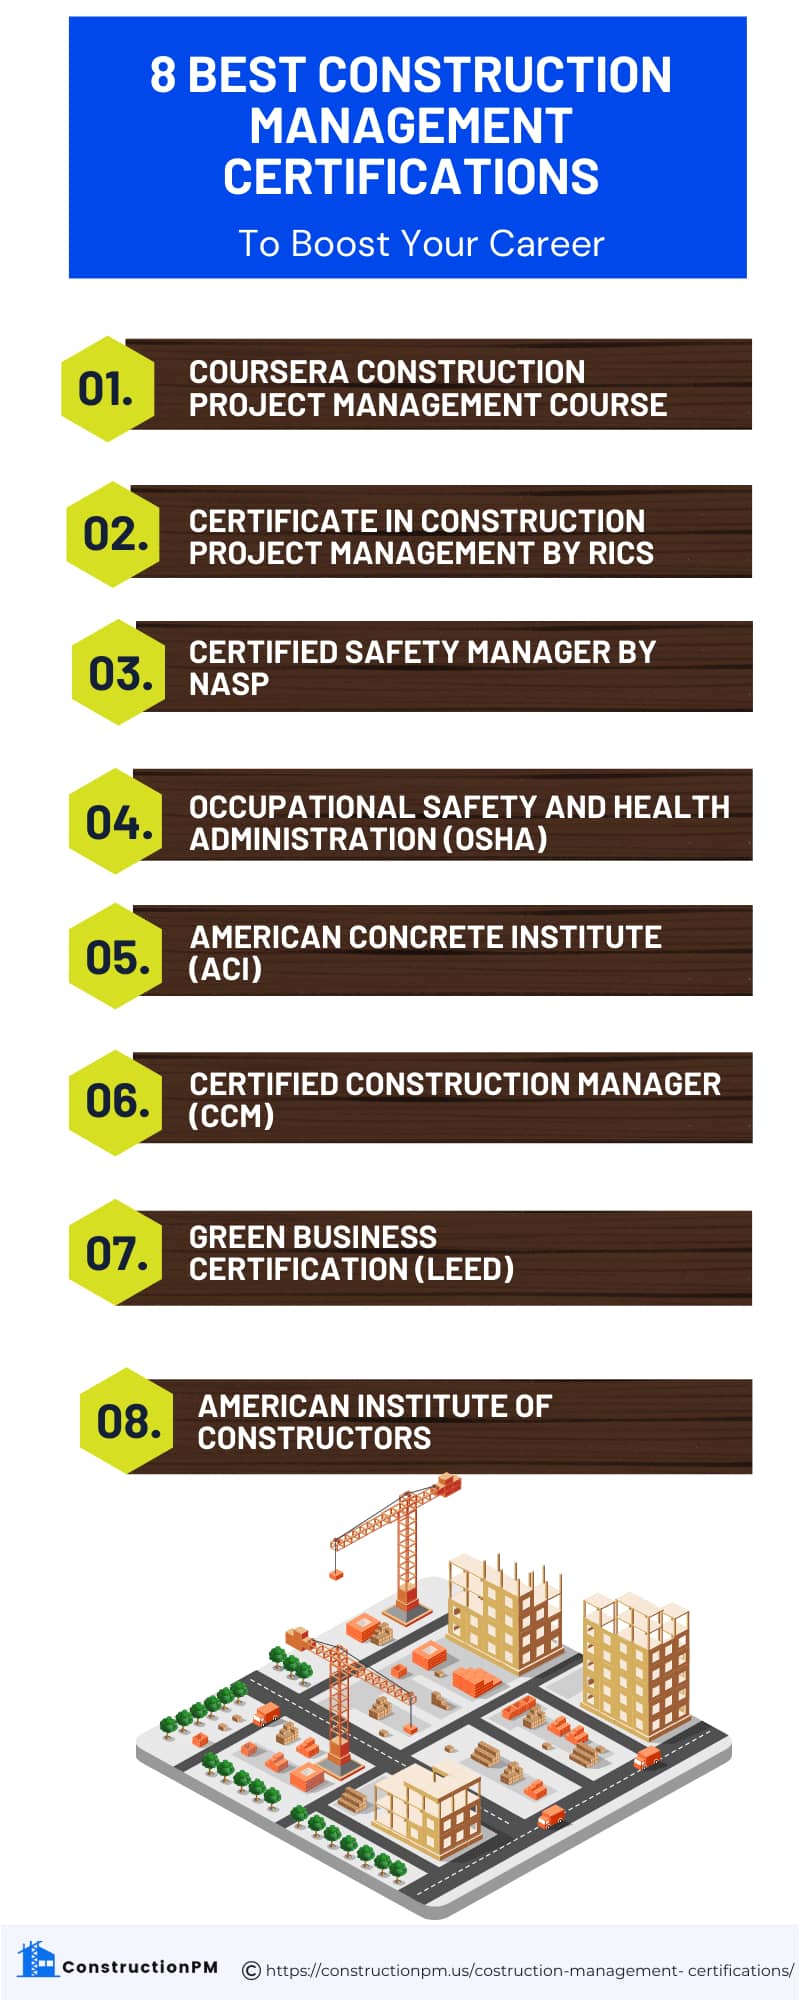 Best Construction Management Certifications